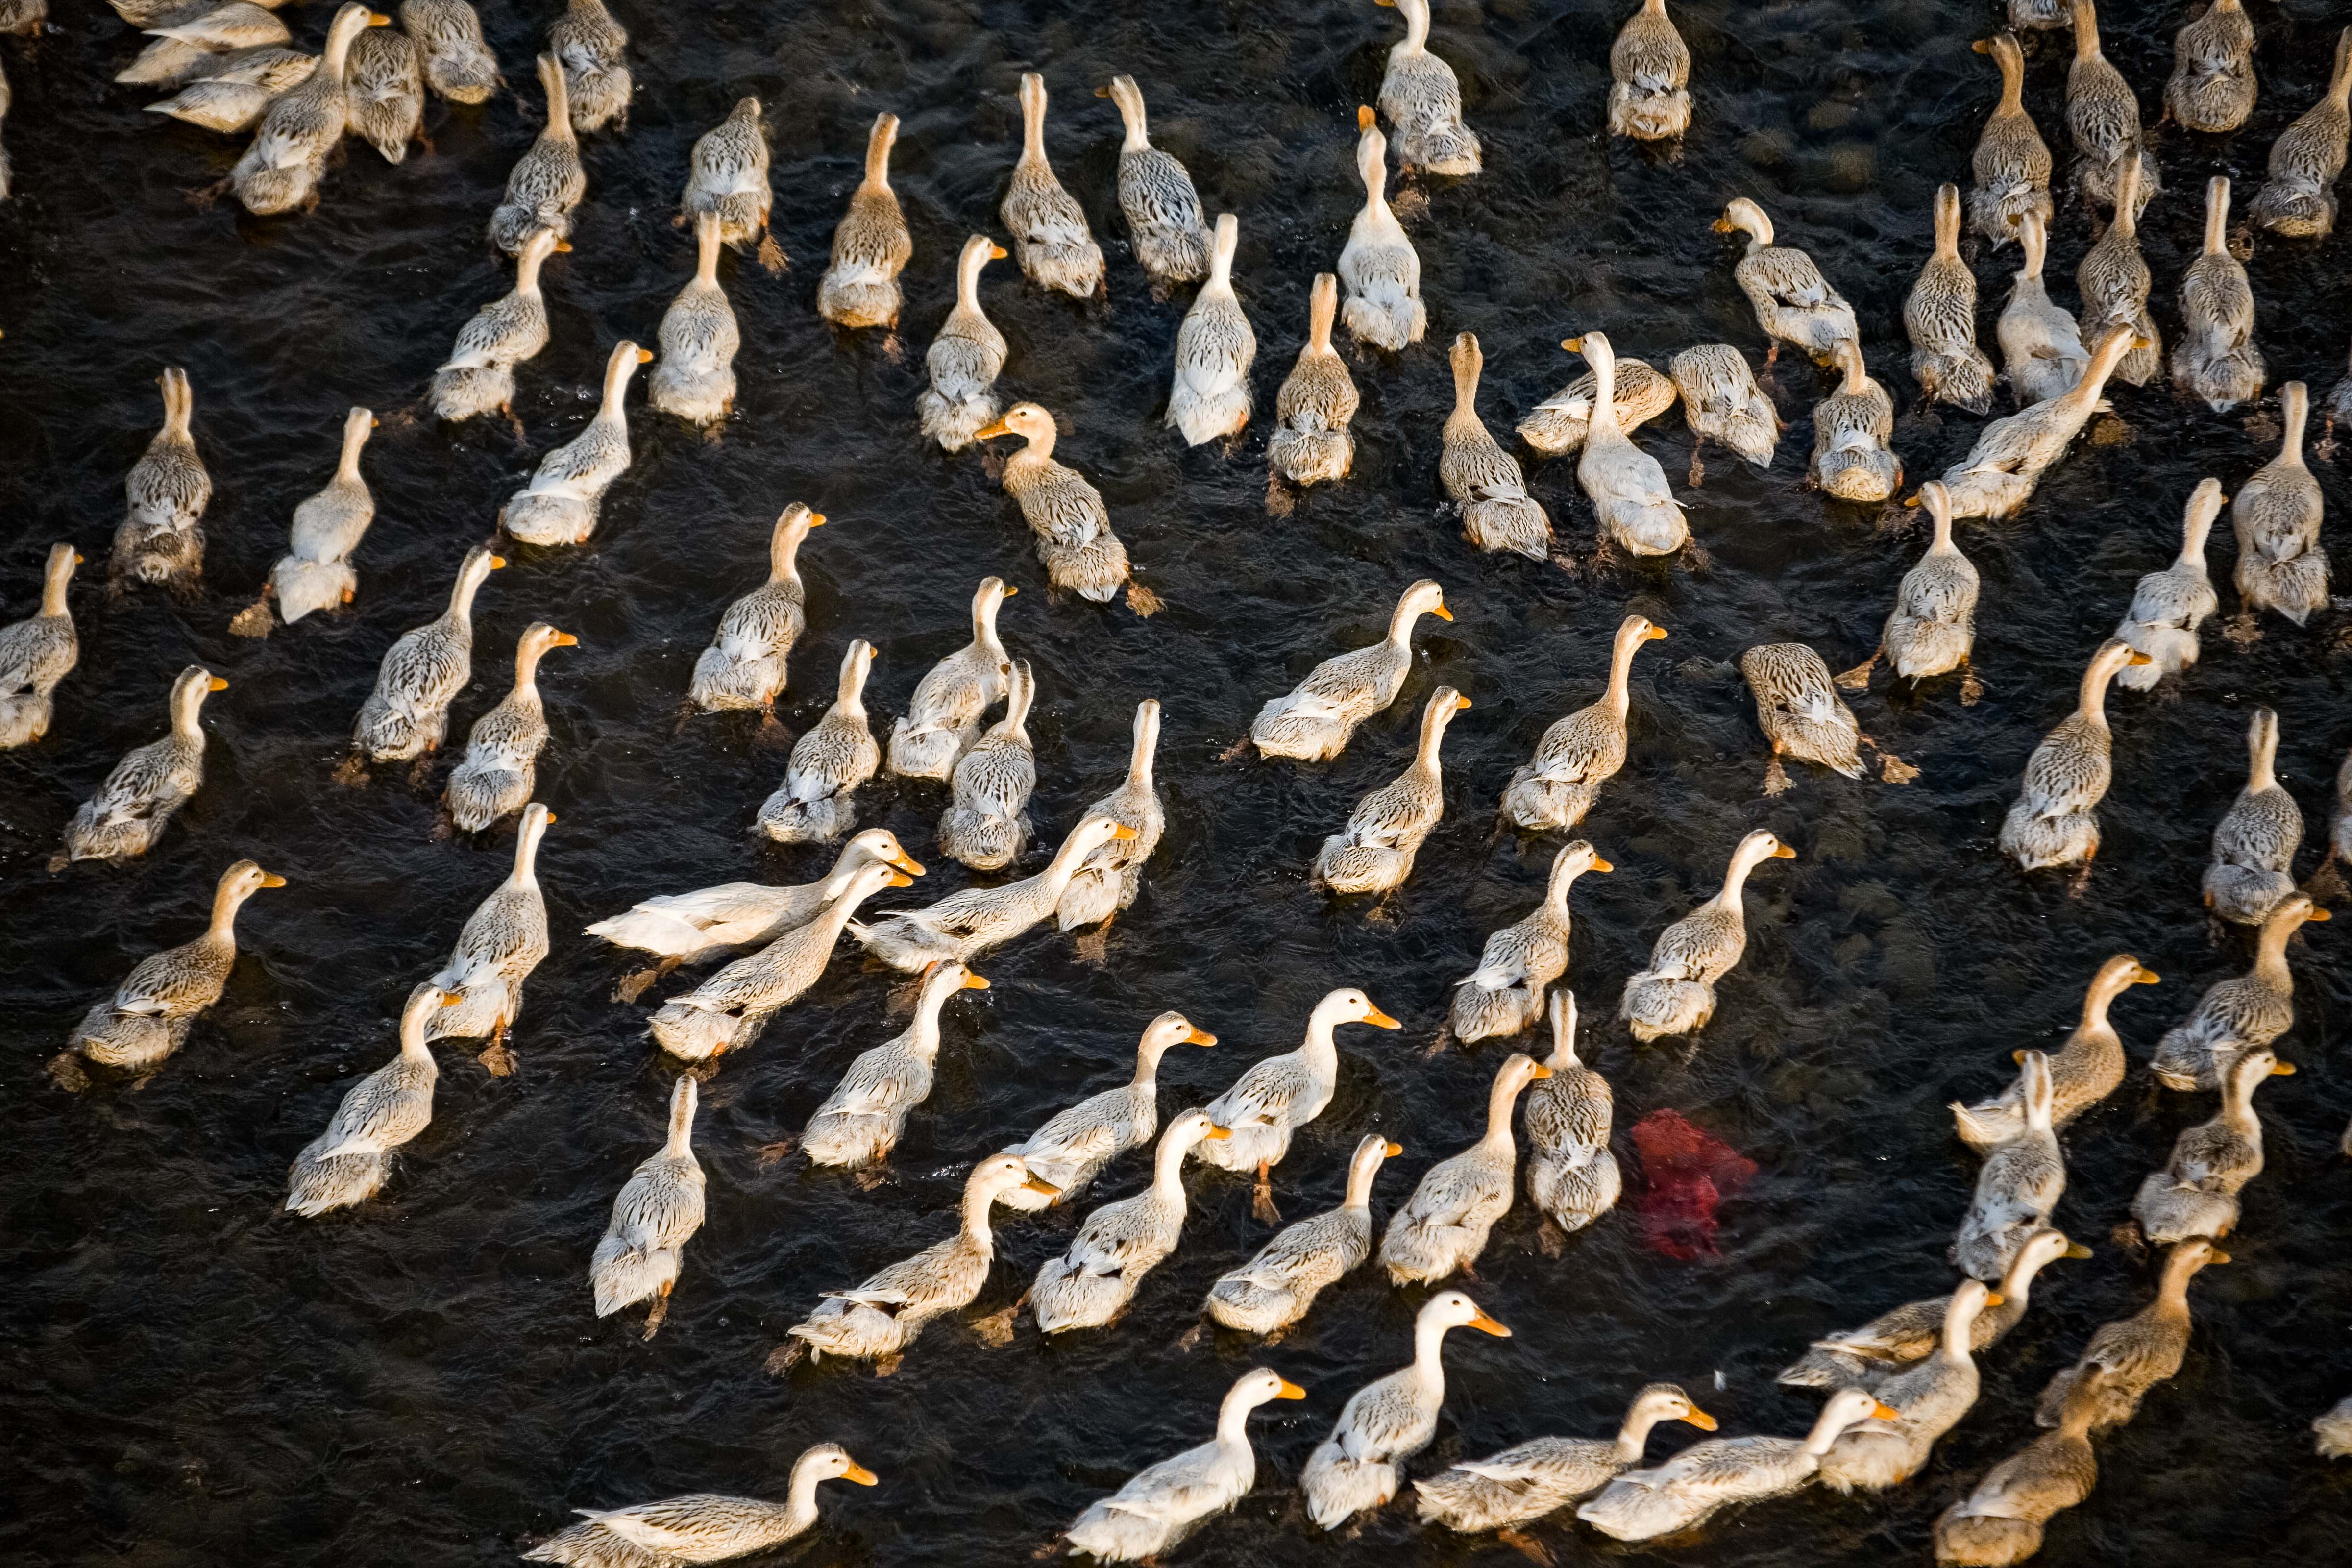 China, Jiangxi Province, Fishing Ducks, 2008, IMG_9668